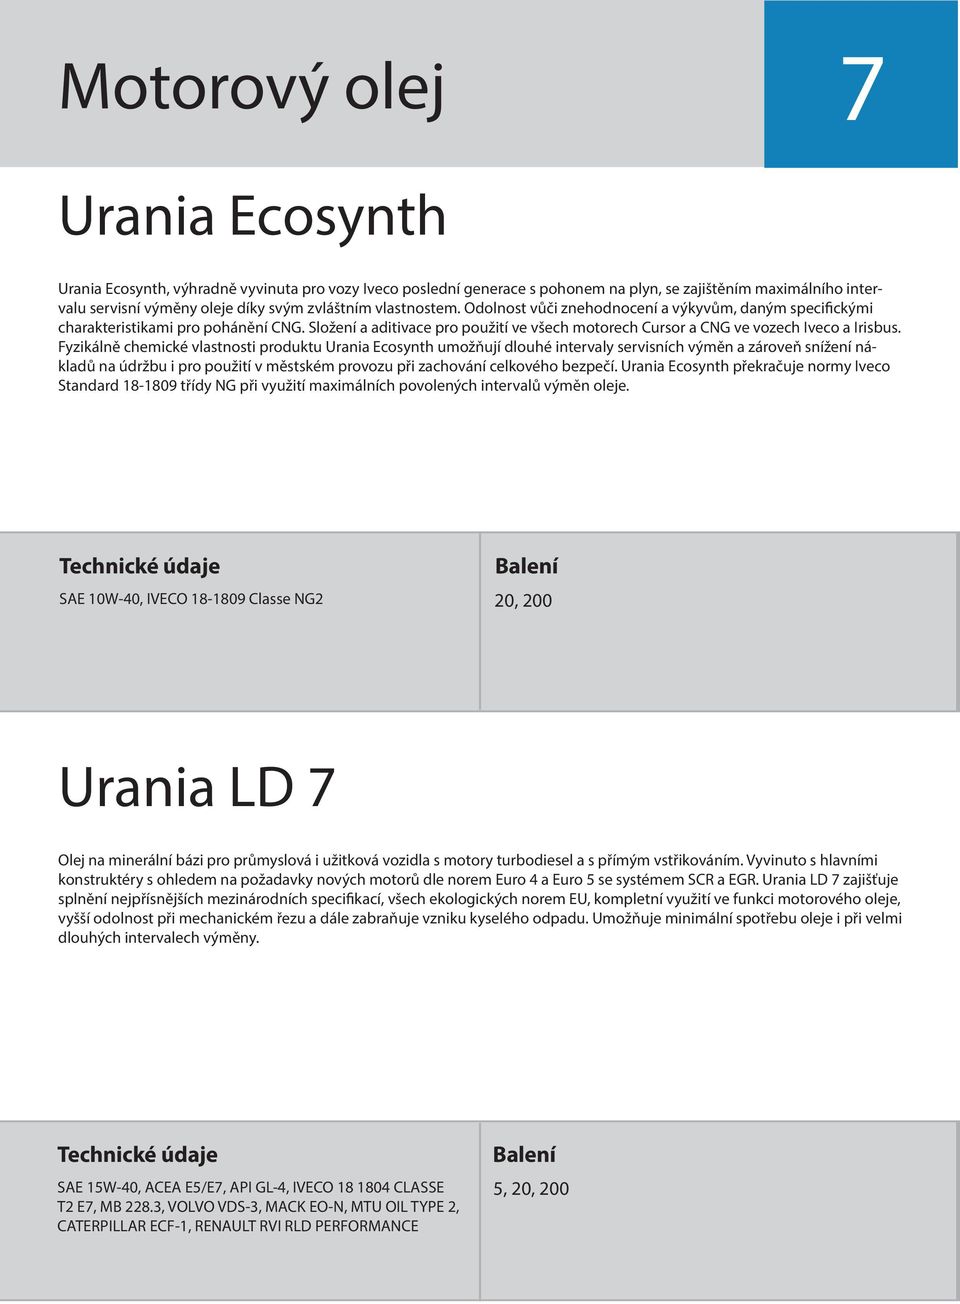 Fyzikálně chemické vlastnosti produktu Urania Ecosynth umožňují dlouhé intervaly servisních výměn a zároveň snížení nákladů na údržbu i pro použití v městském provozu při zachování celkového bezpečí.